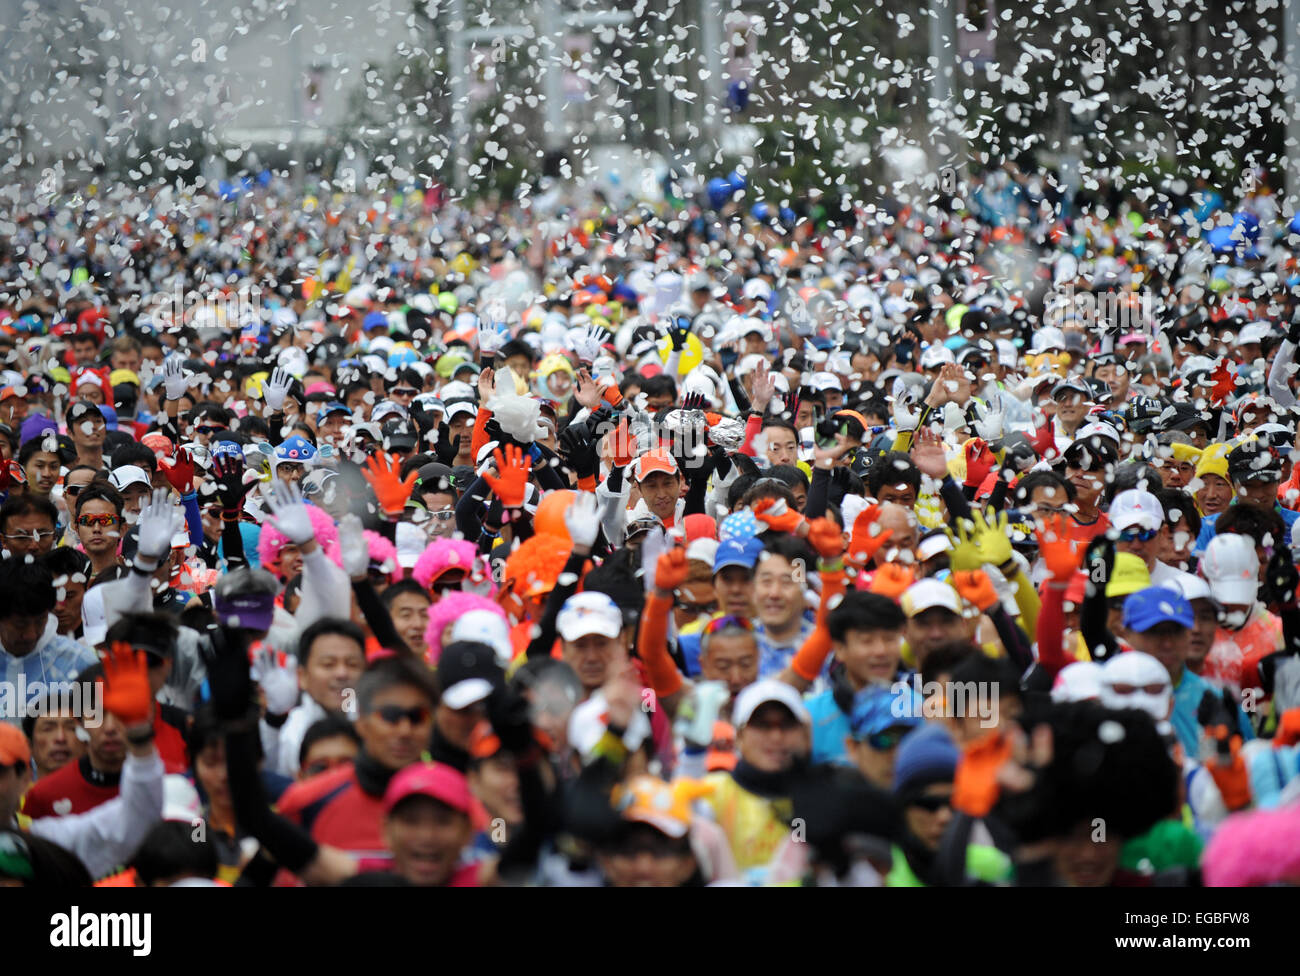 Tokyo, Japon. Feb 22, 2015. Les coureurs de marathon commence entre la ville de Tokyo au cours de la 2015 Marathon de Tokyo à Tokyo, Japon, le 22 février 2015. Environ 36 000 personnes ont participé à cet événement sportif annuel. © Stringer/Xinhua/Alamy Live News Banque D'Images